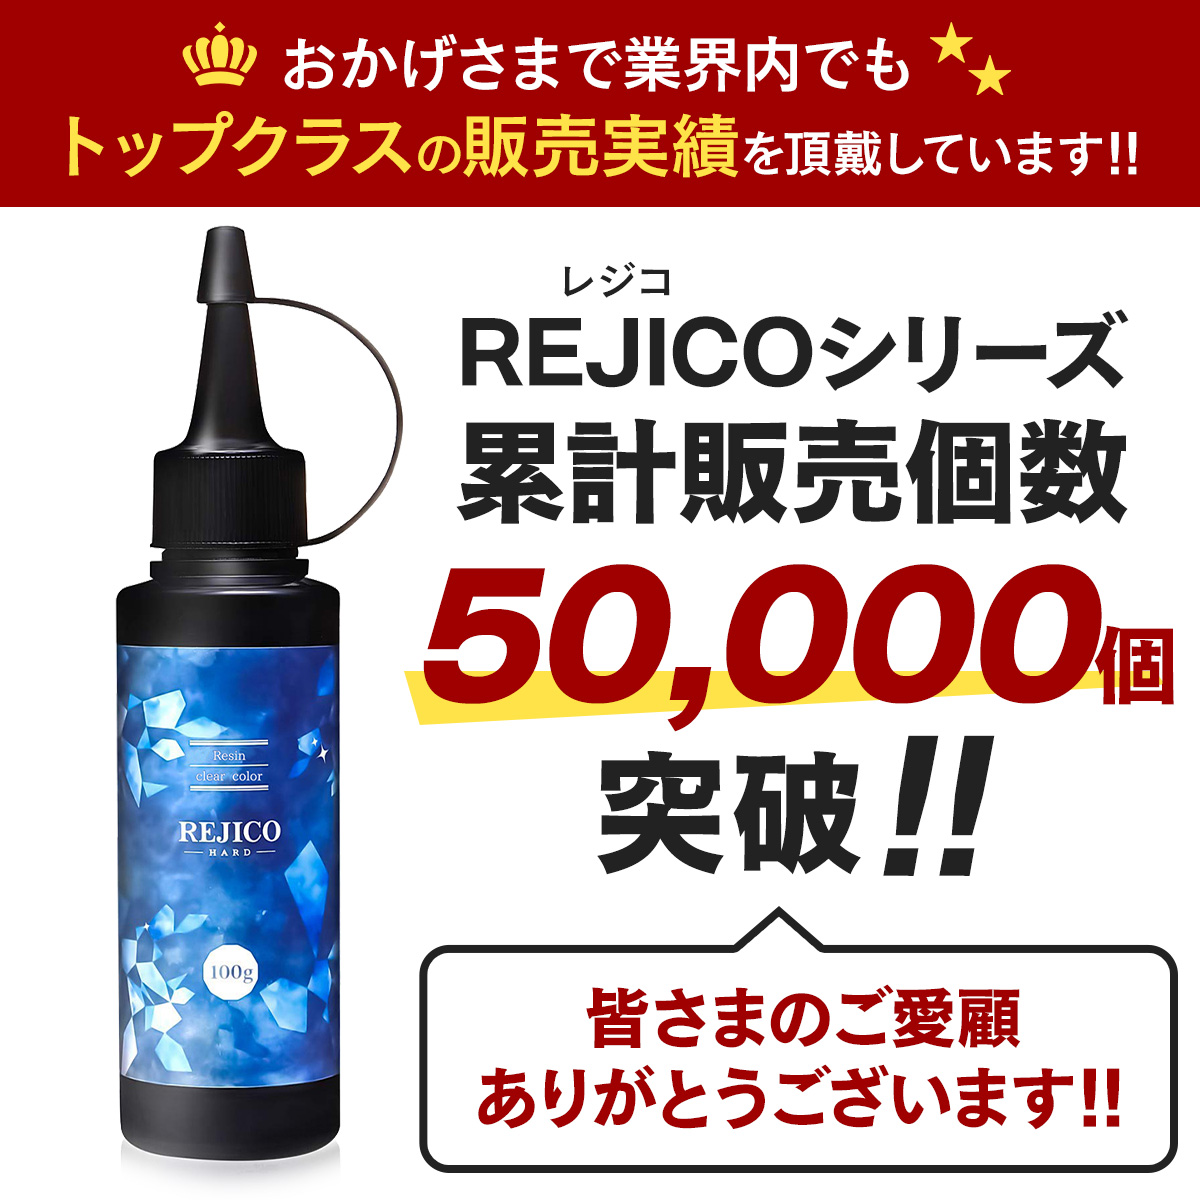 【 送料無料 】レジン液 大容量 500g UV-LED対応 ハードタイプ 日本製 REJICO レジコ | イロドリ生活 楽天市場店